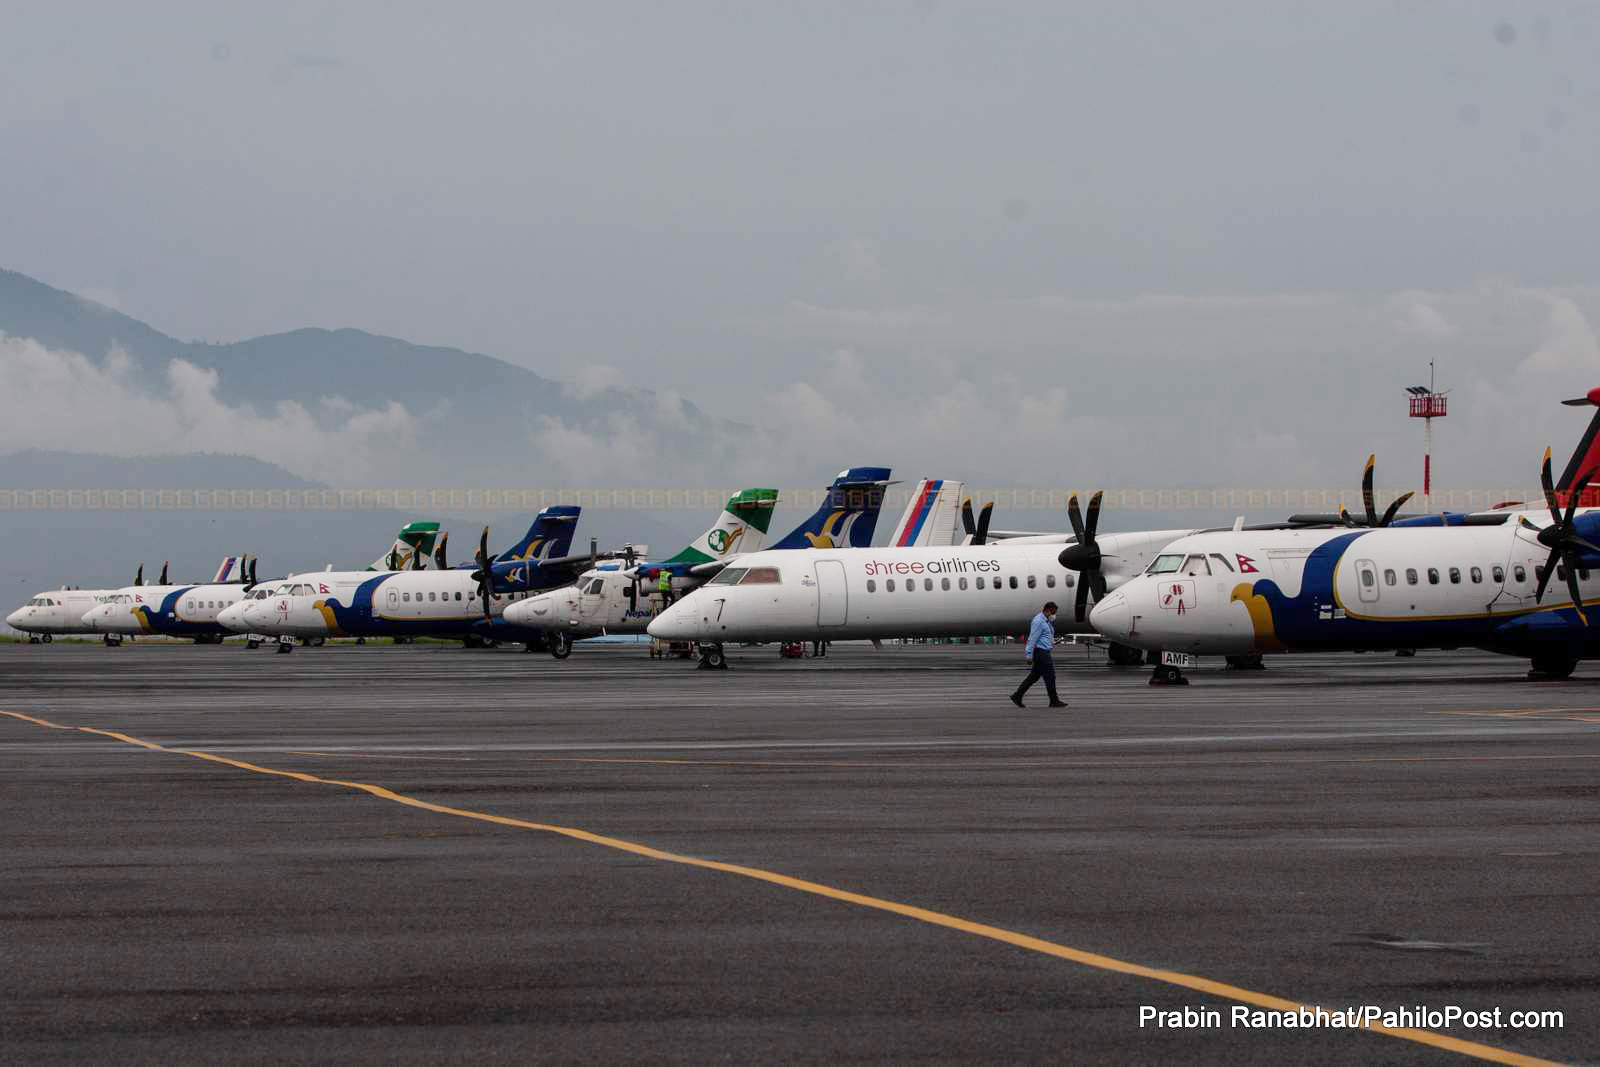 आन्तरिक उडानमा नयाँ मापदण्ड कार्यान्वयन गर्न हवाई संचालक सहमत, १० दिनभित्र नयाँ मापदण्ड